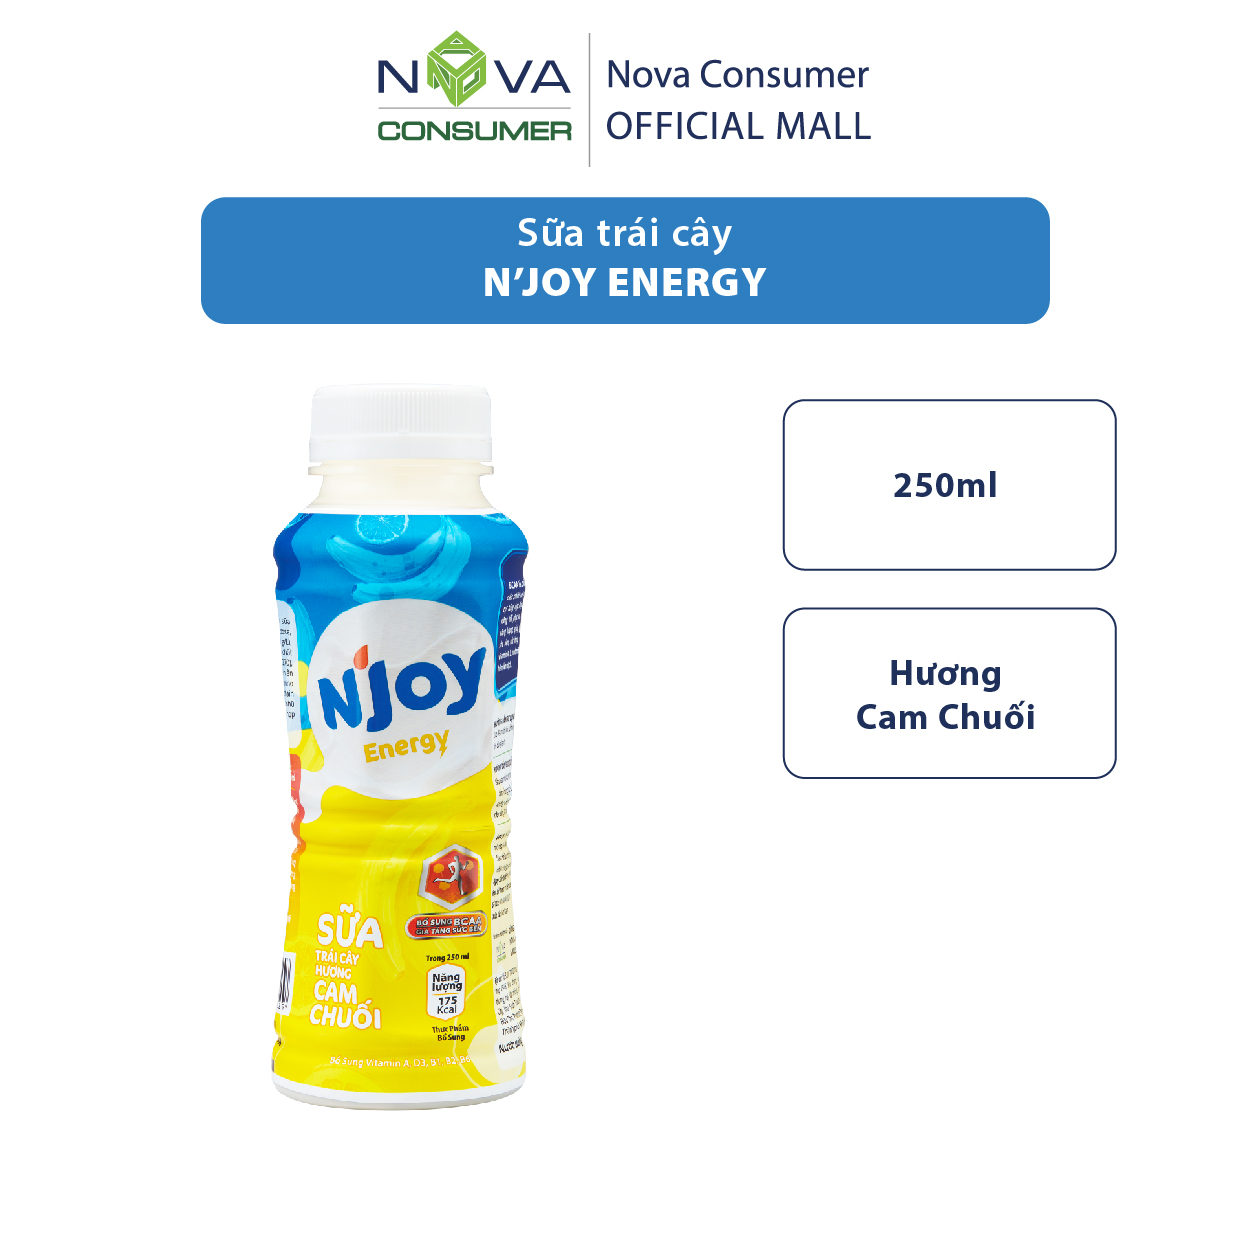 Sữa trái cây N’Joy Energy hương Cam Chuối 250ml